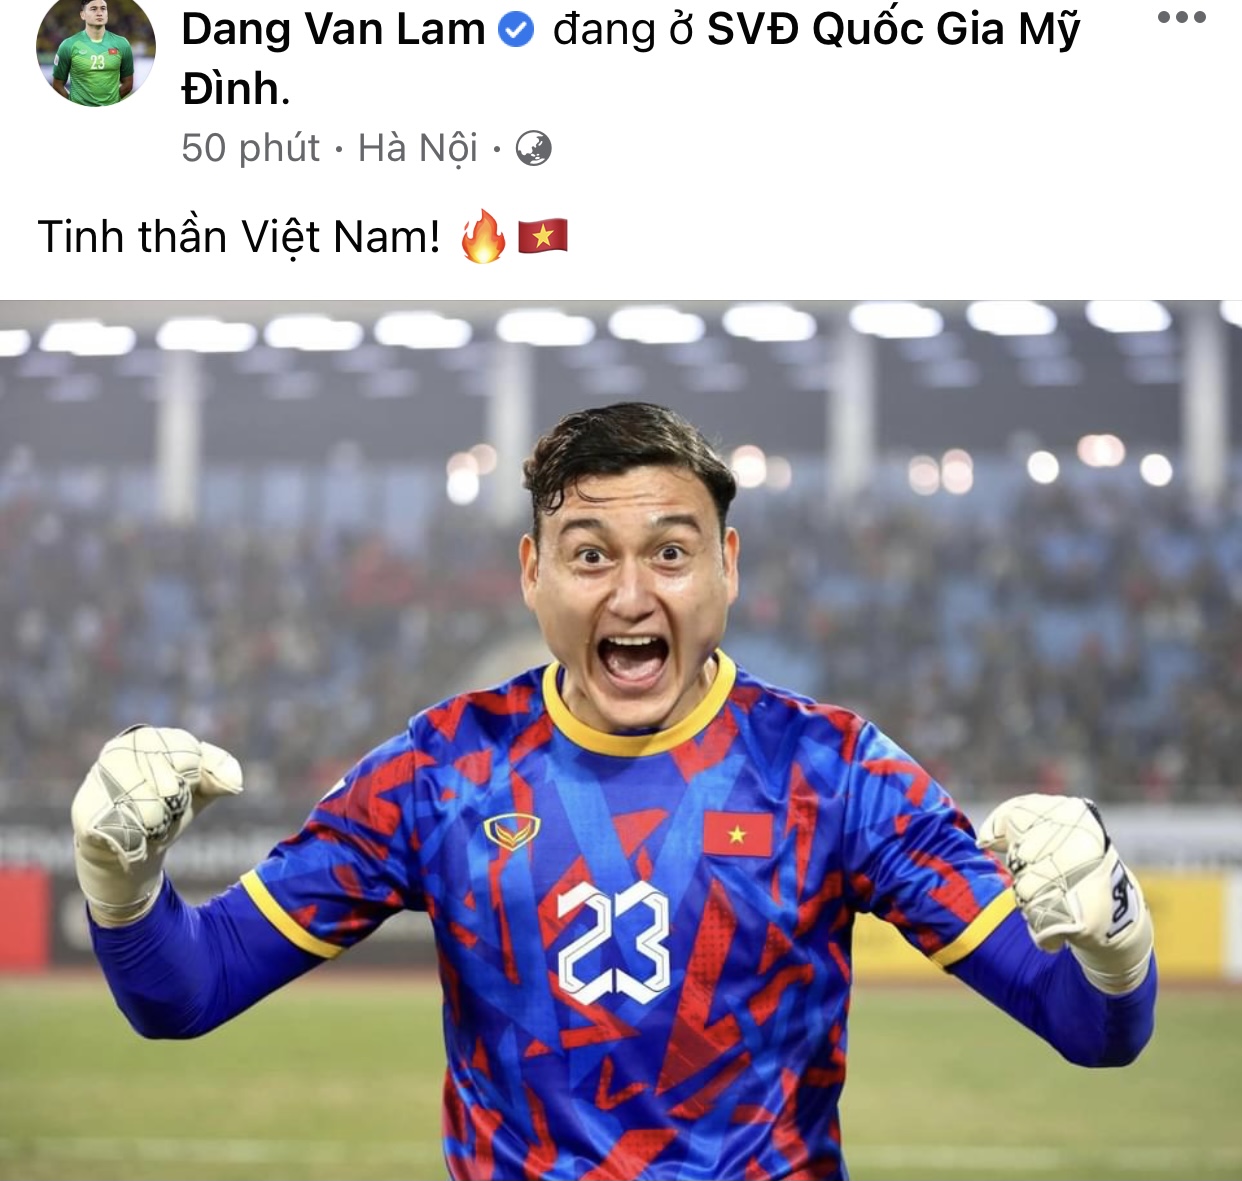 ĐT Việt Nam ăn mừng tưng bừng trên MXH sau chiến thắng trước ĐT ...